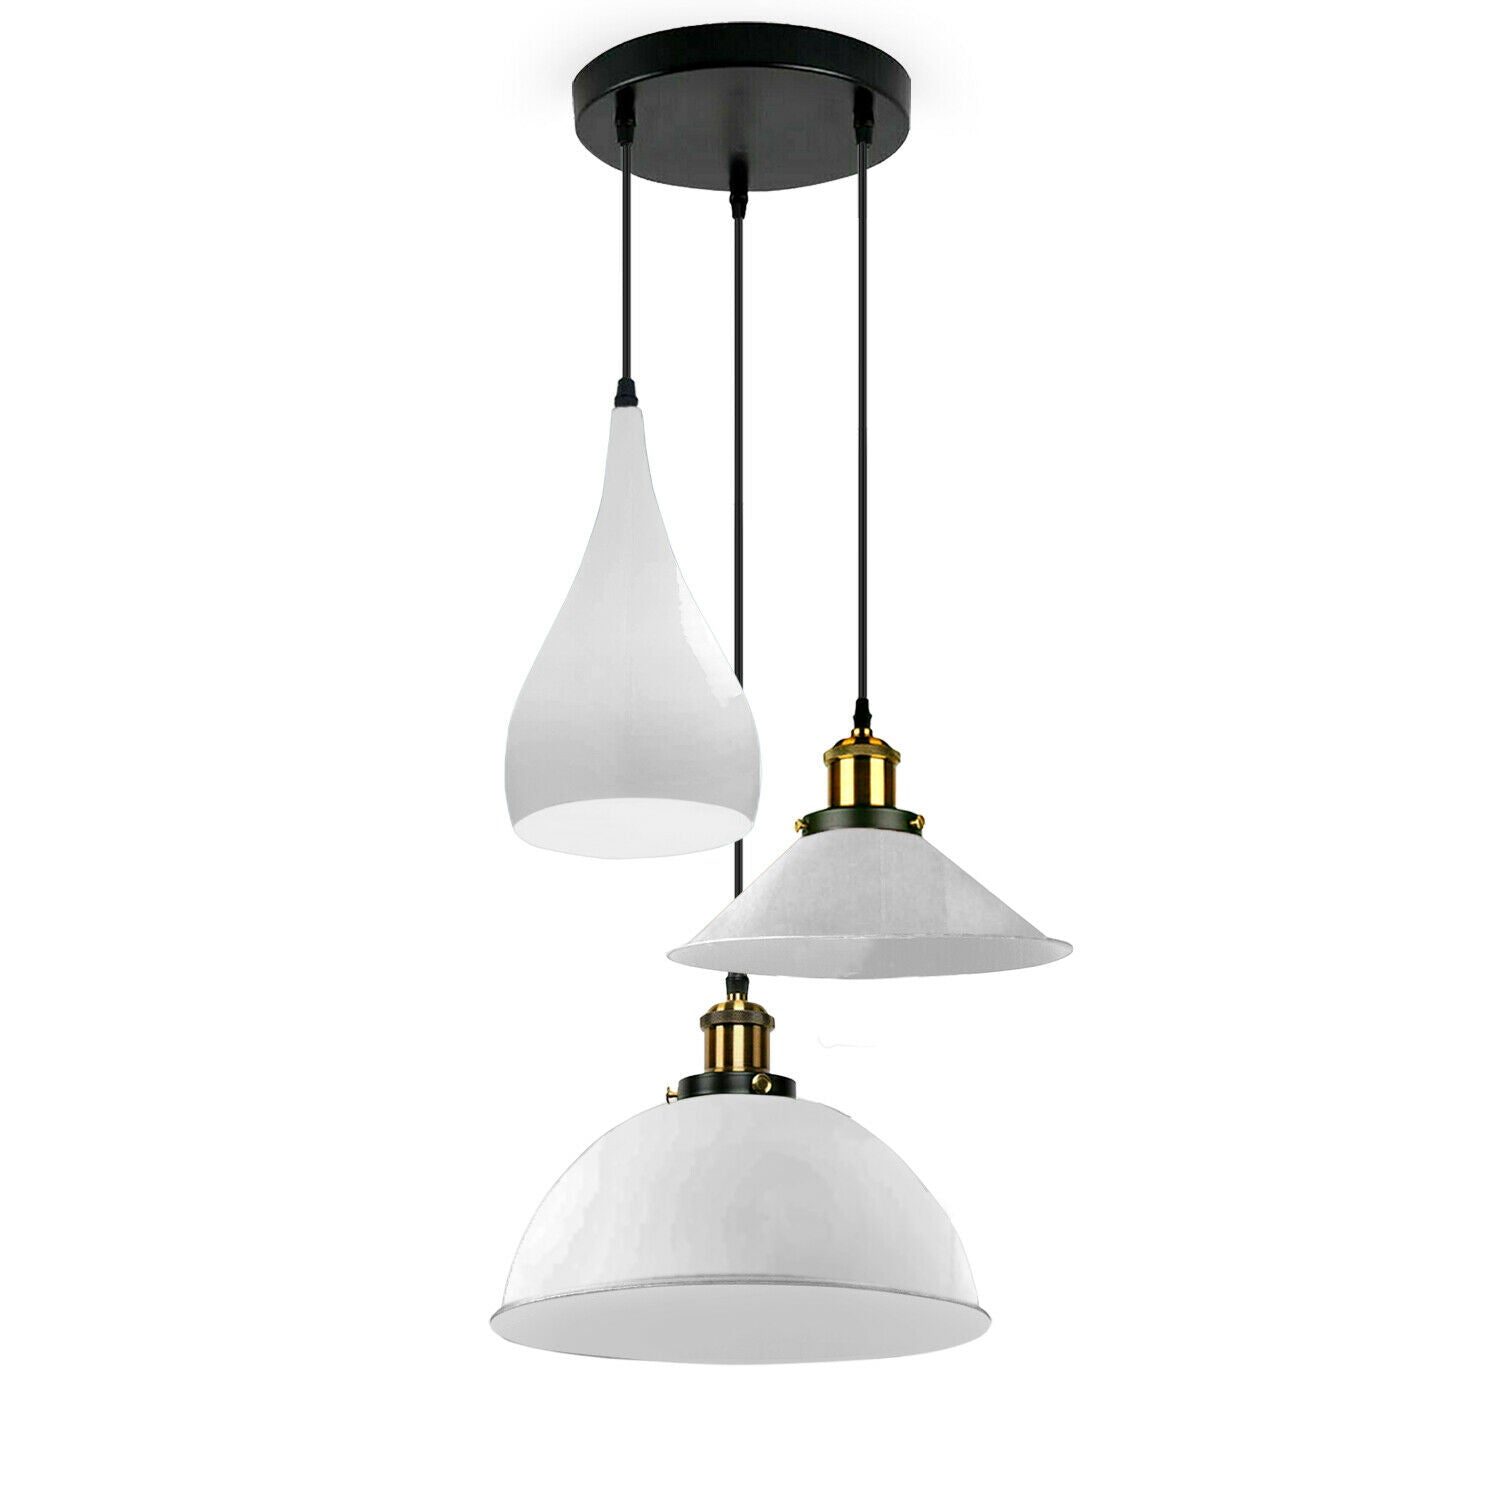 White Modern 3 Head Metal Hanging Light Shade Ceiling Pendant Light~3514 - LEDSone UK Ltd